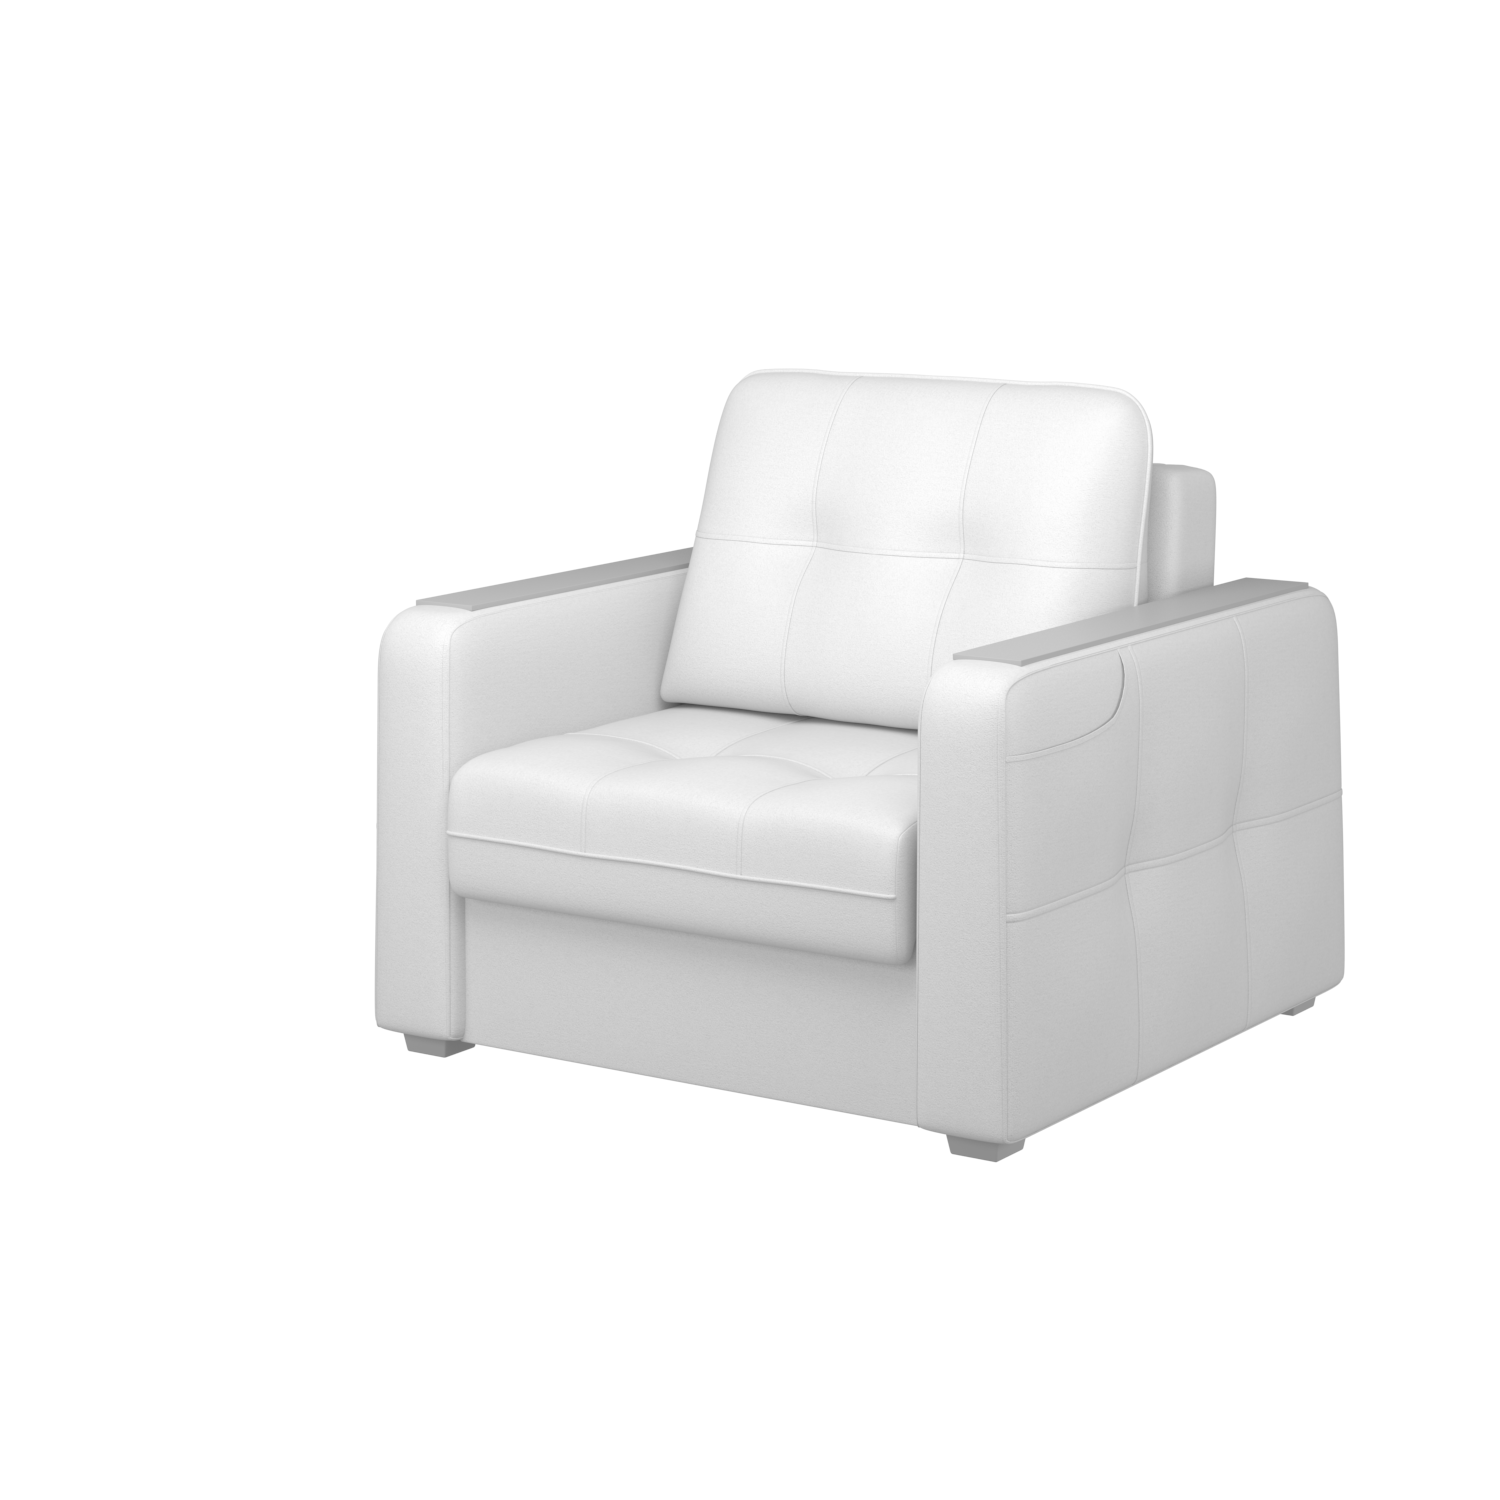 Мягкое кресло с ящиком Киль-3, кКЛ01.кш796.796у